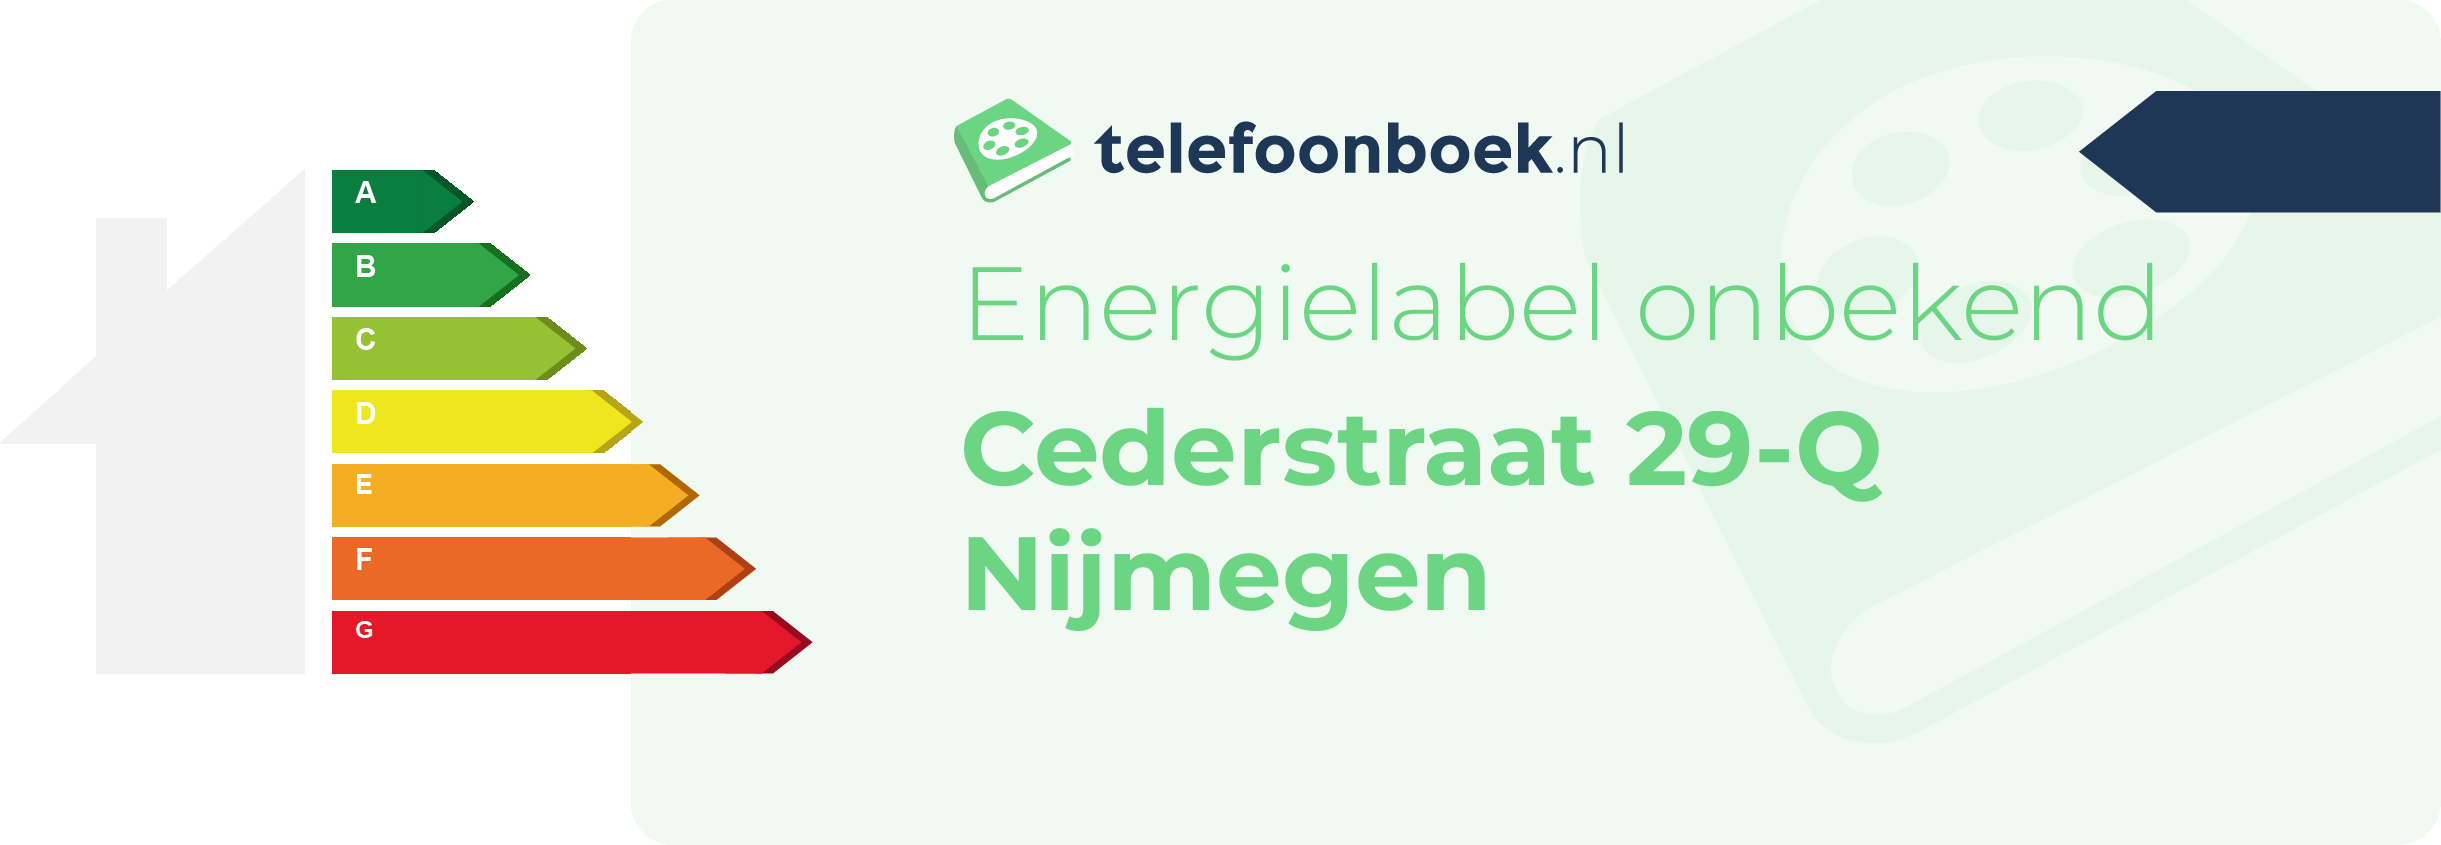 Energielabel Cederstraat 29-Q Nijmegen